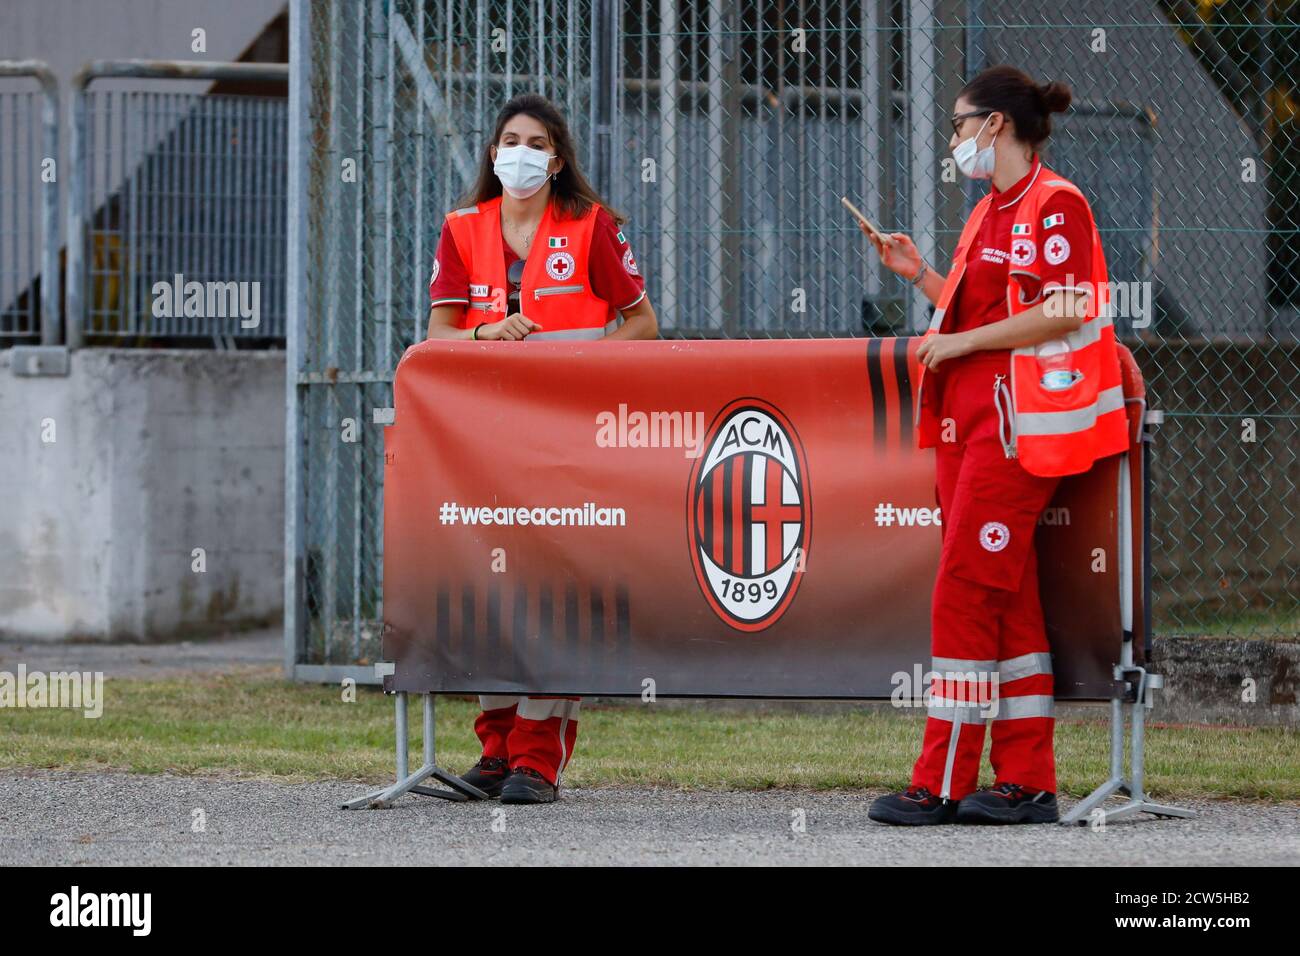 Personale medico sanitario a bordo campo during AC Milan vs Pink Bari, Italian Soccer Serie A Women Championship, Milan, Italy, 05 Sep 2020 Stock Photo